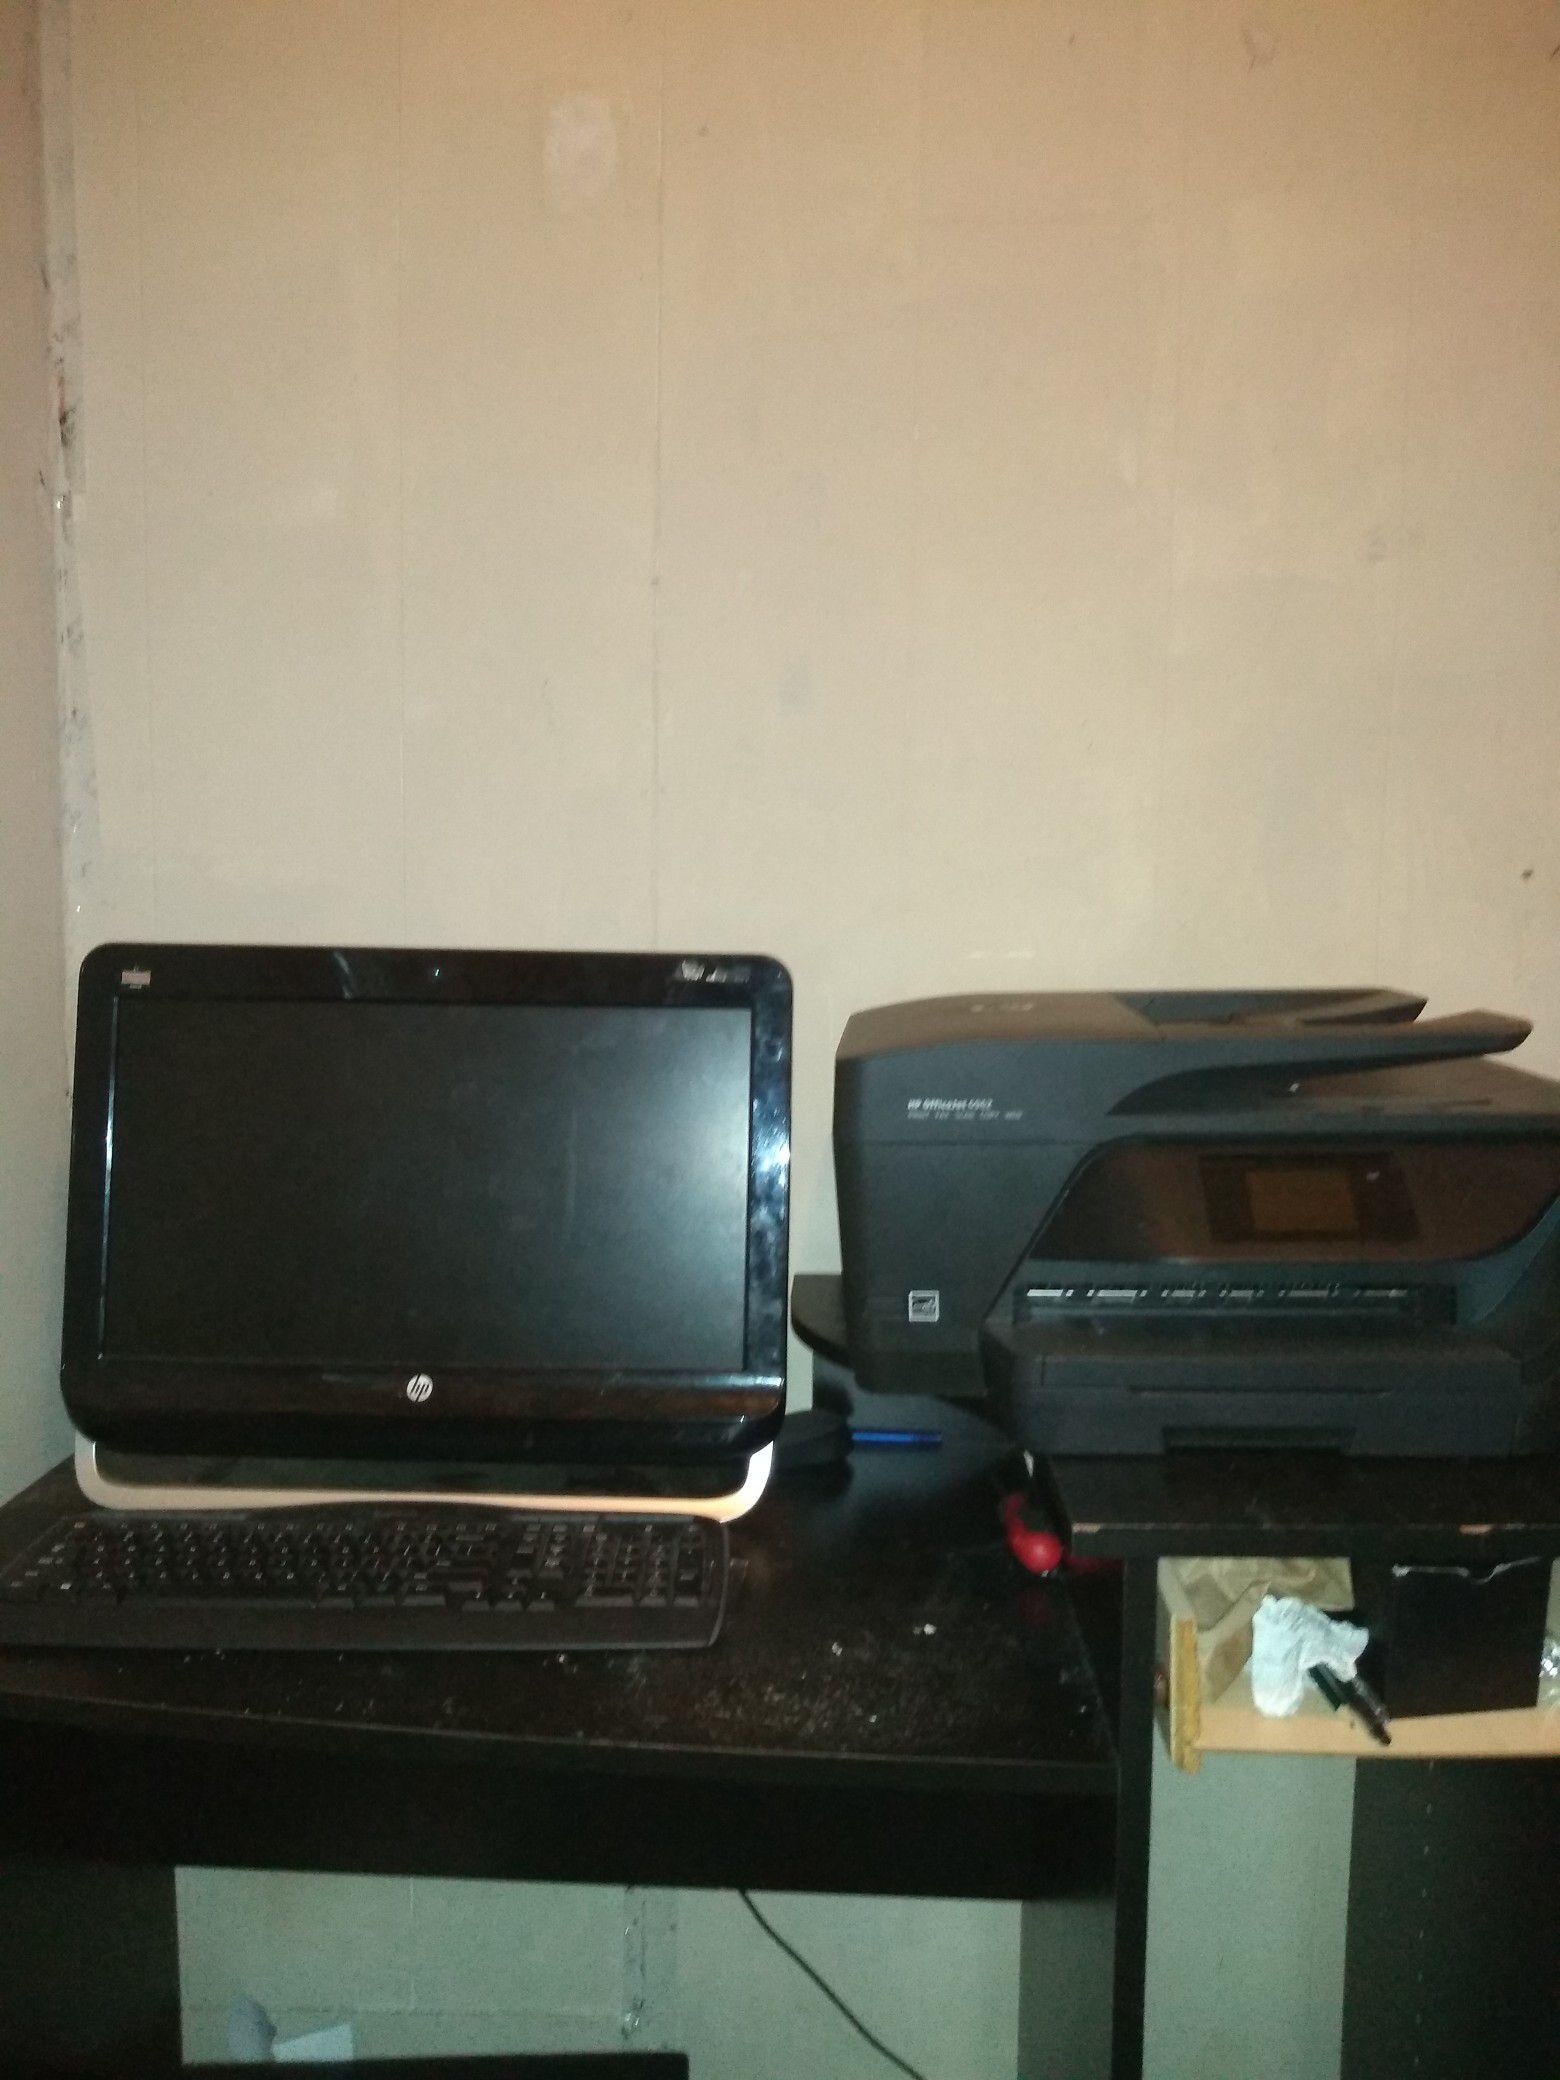 Hp computer and up printer